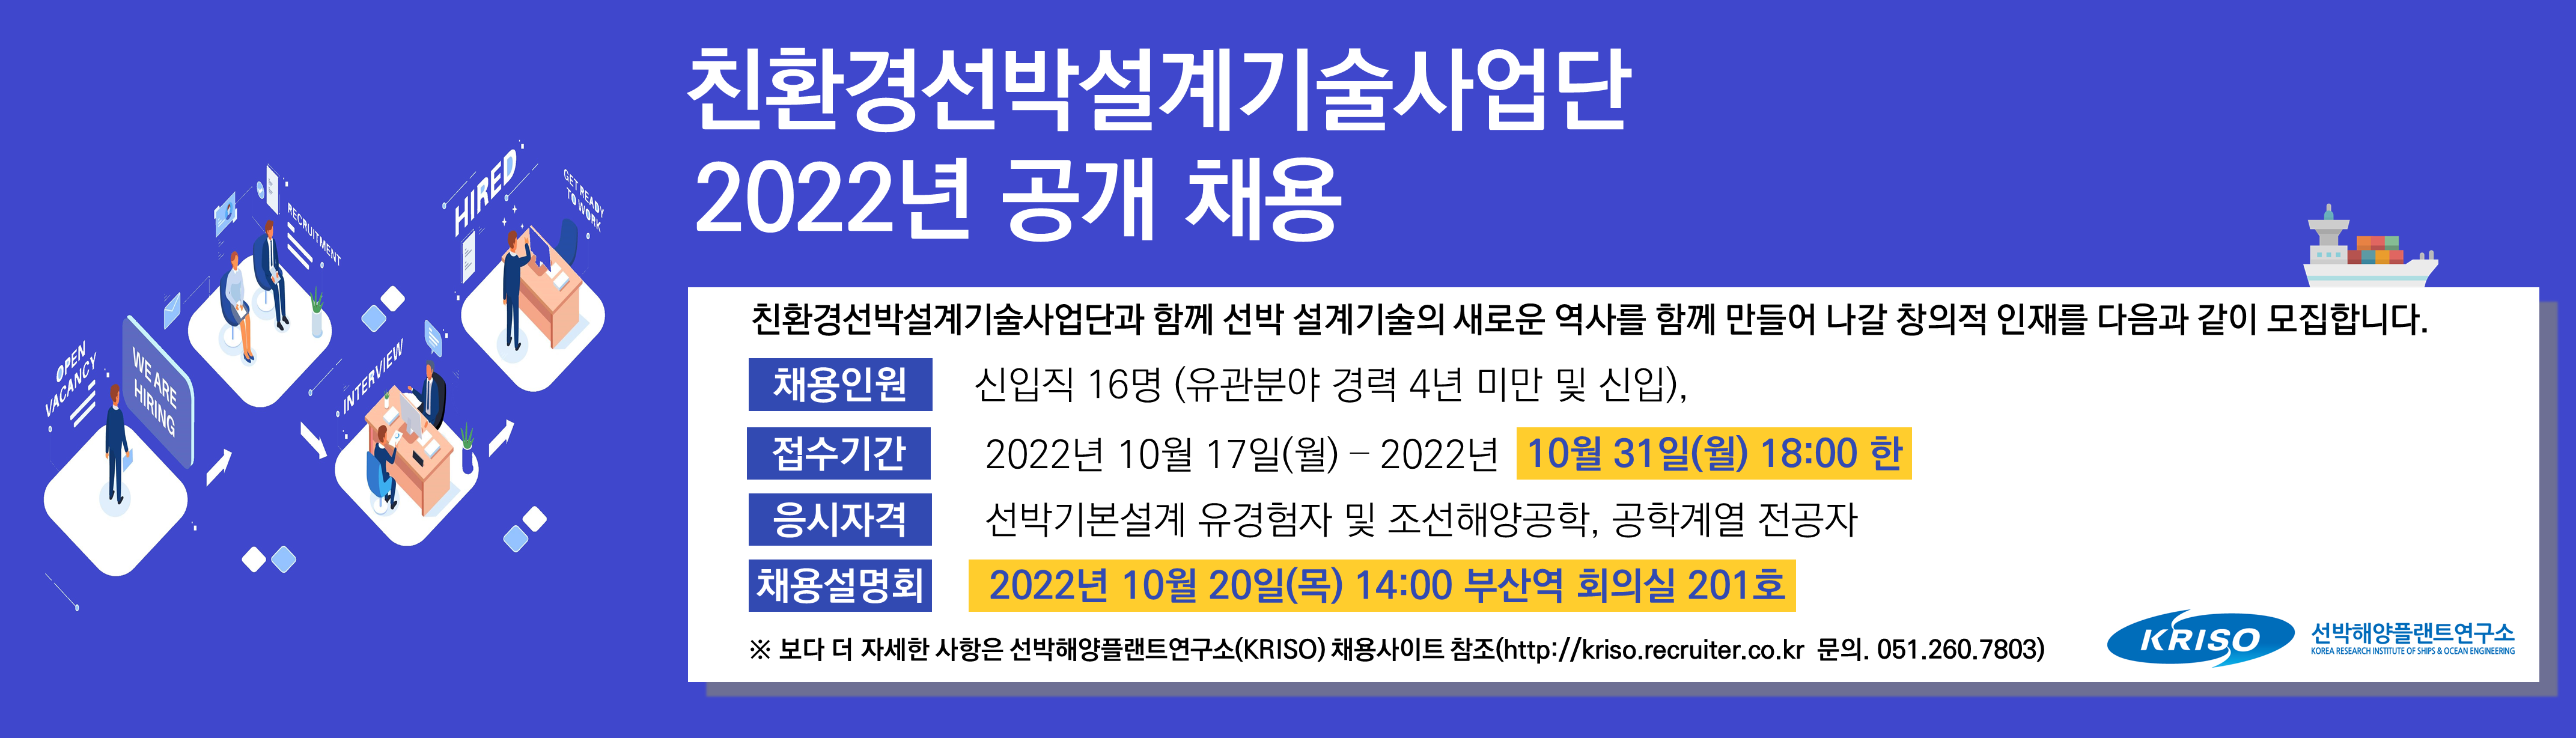 친환경선박설계기술사업단 2022년 공개채용